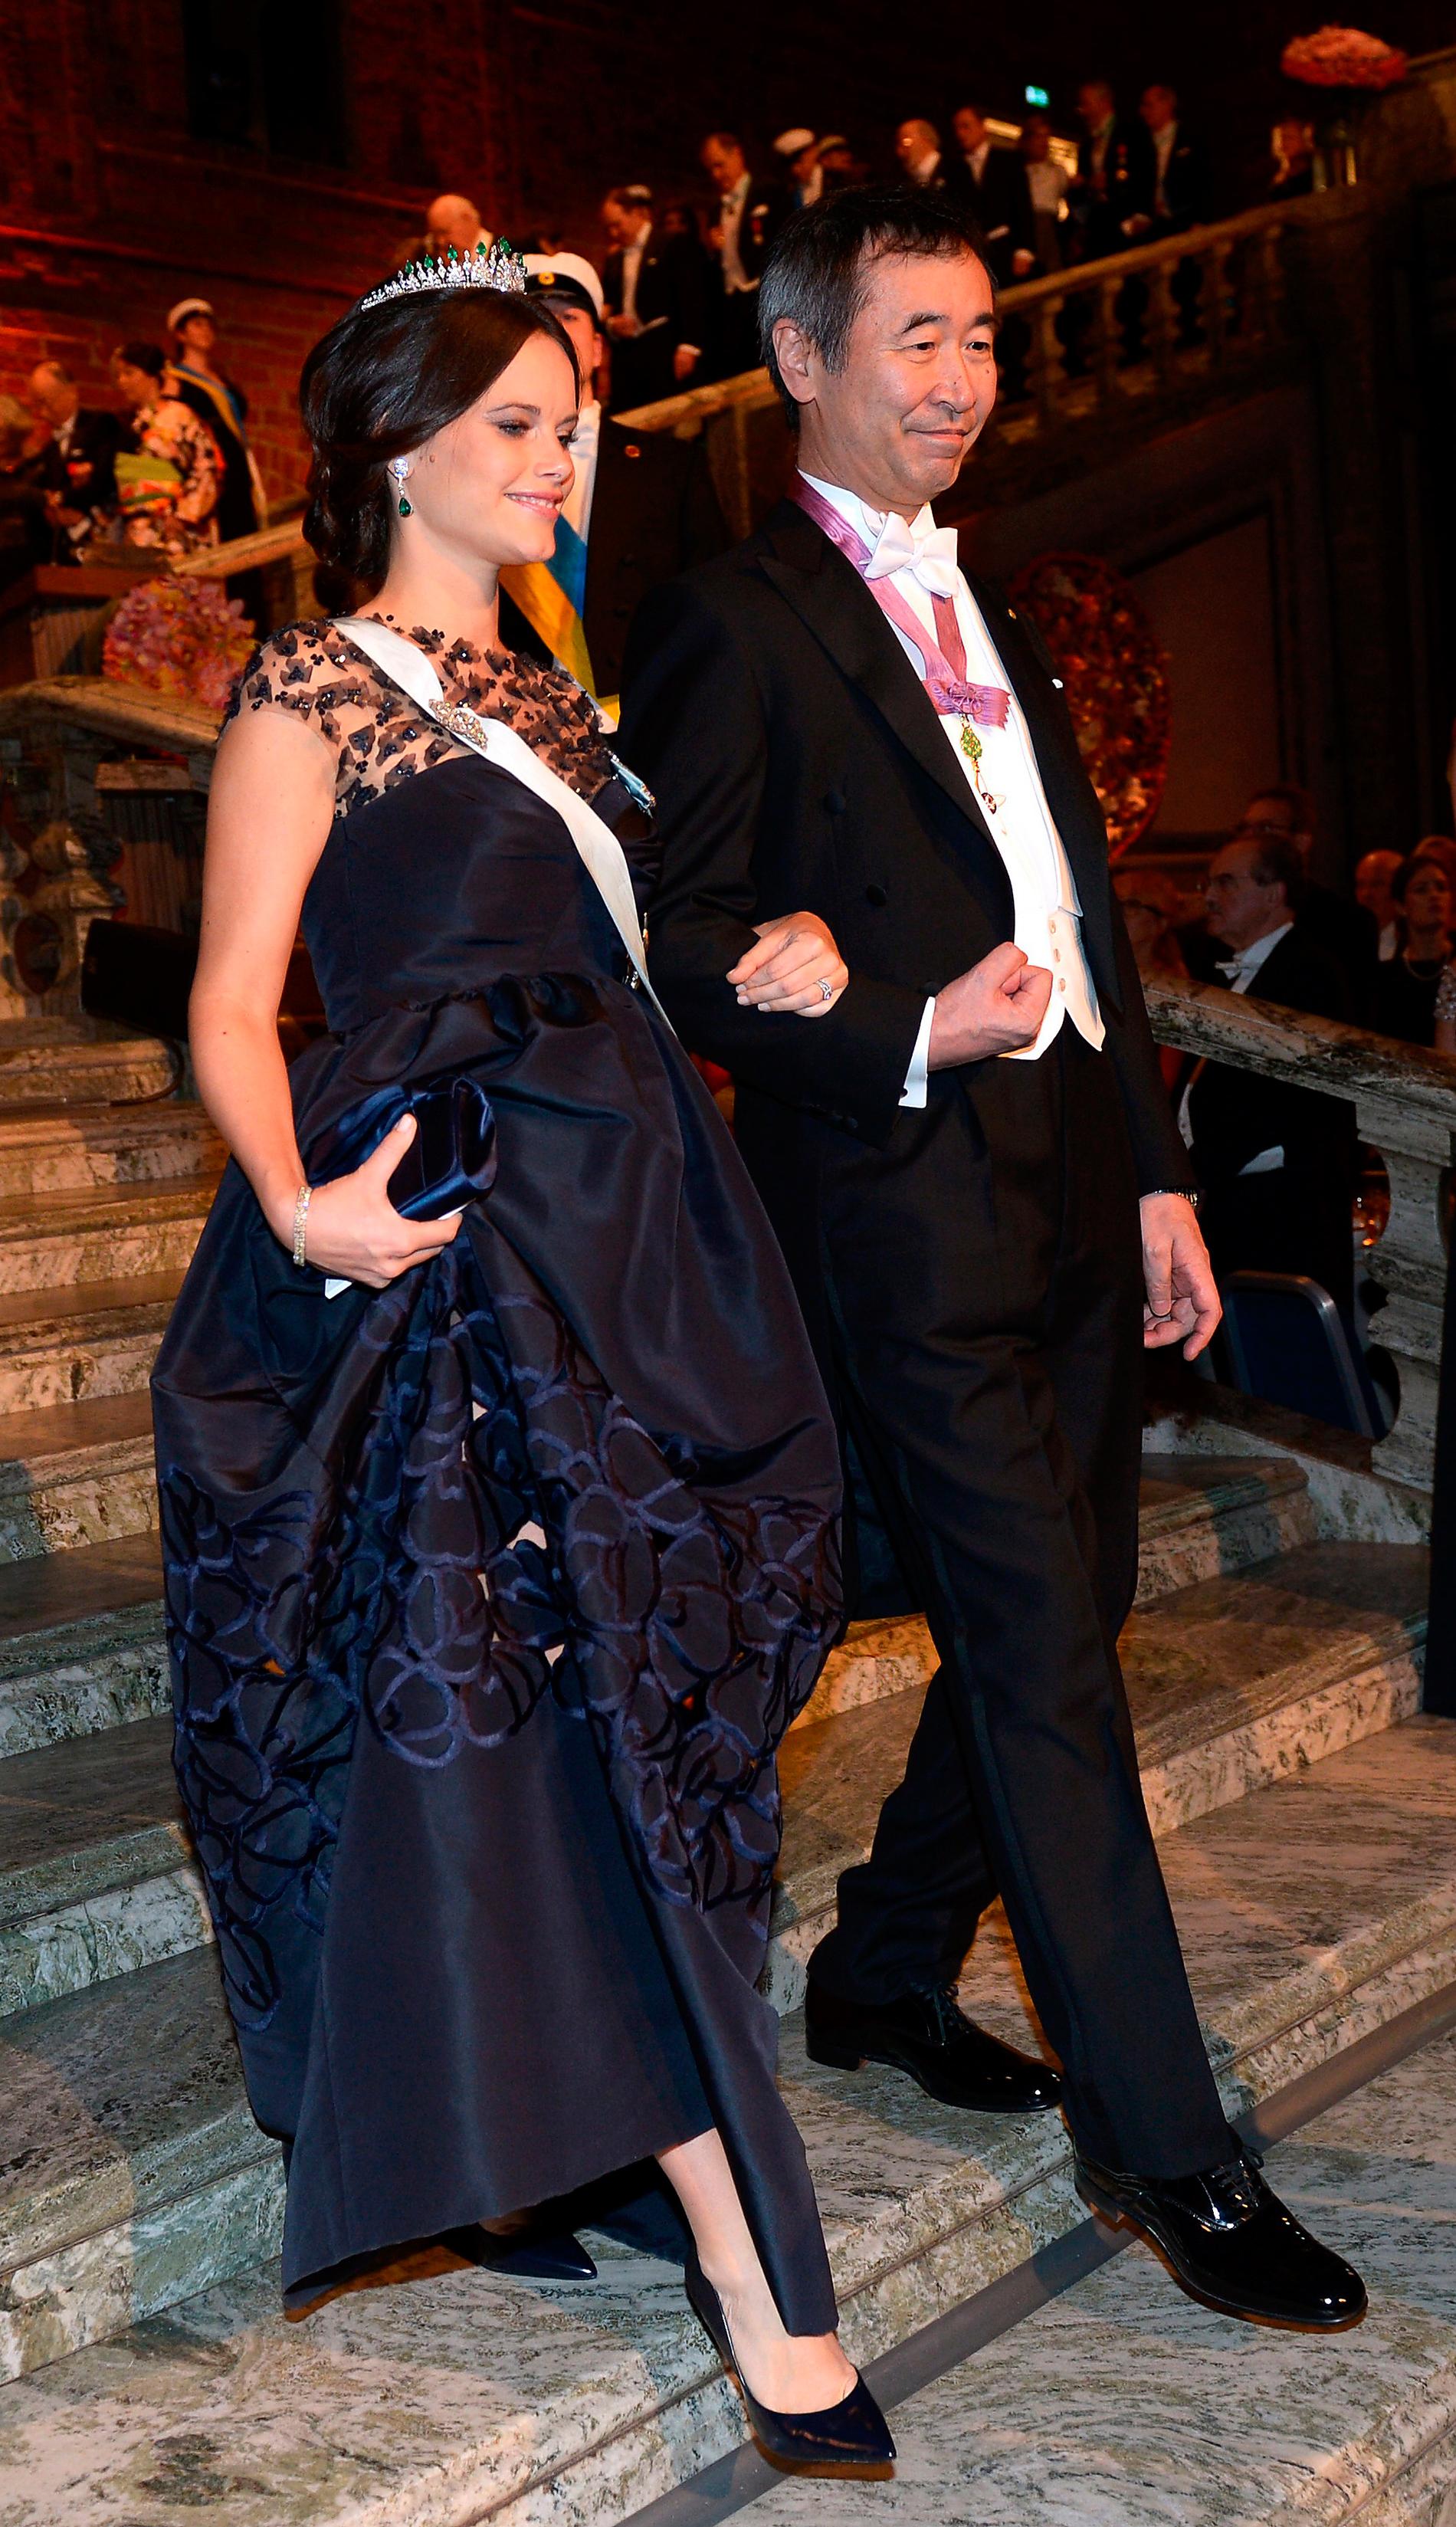 Sofias klänning vid nobelfesten 2015 kostar 76 000 kronor i butik. Men det sägs att Sofia fick en kraftig ”prinsess­rabatt”.